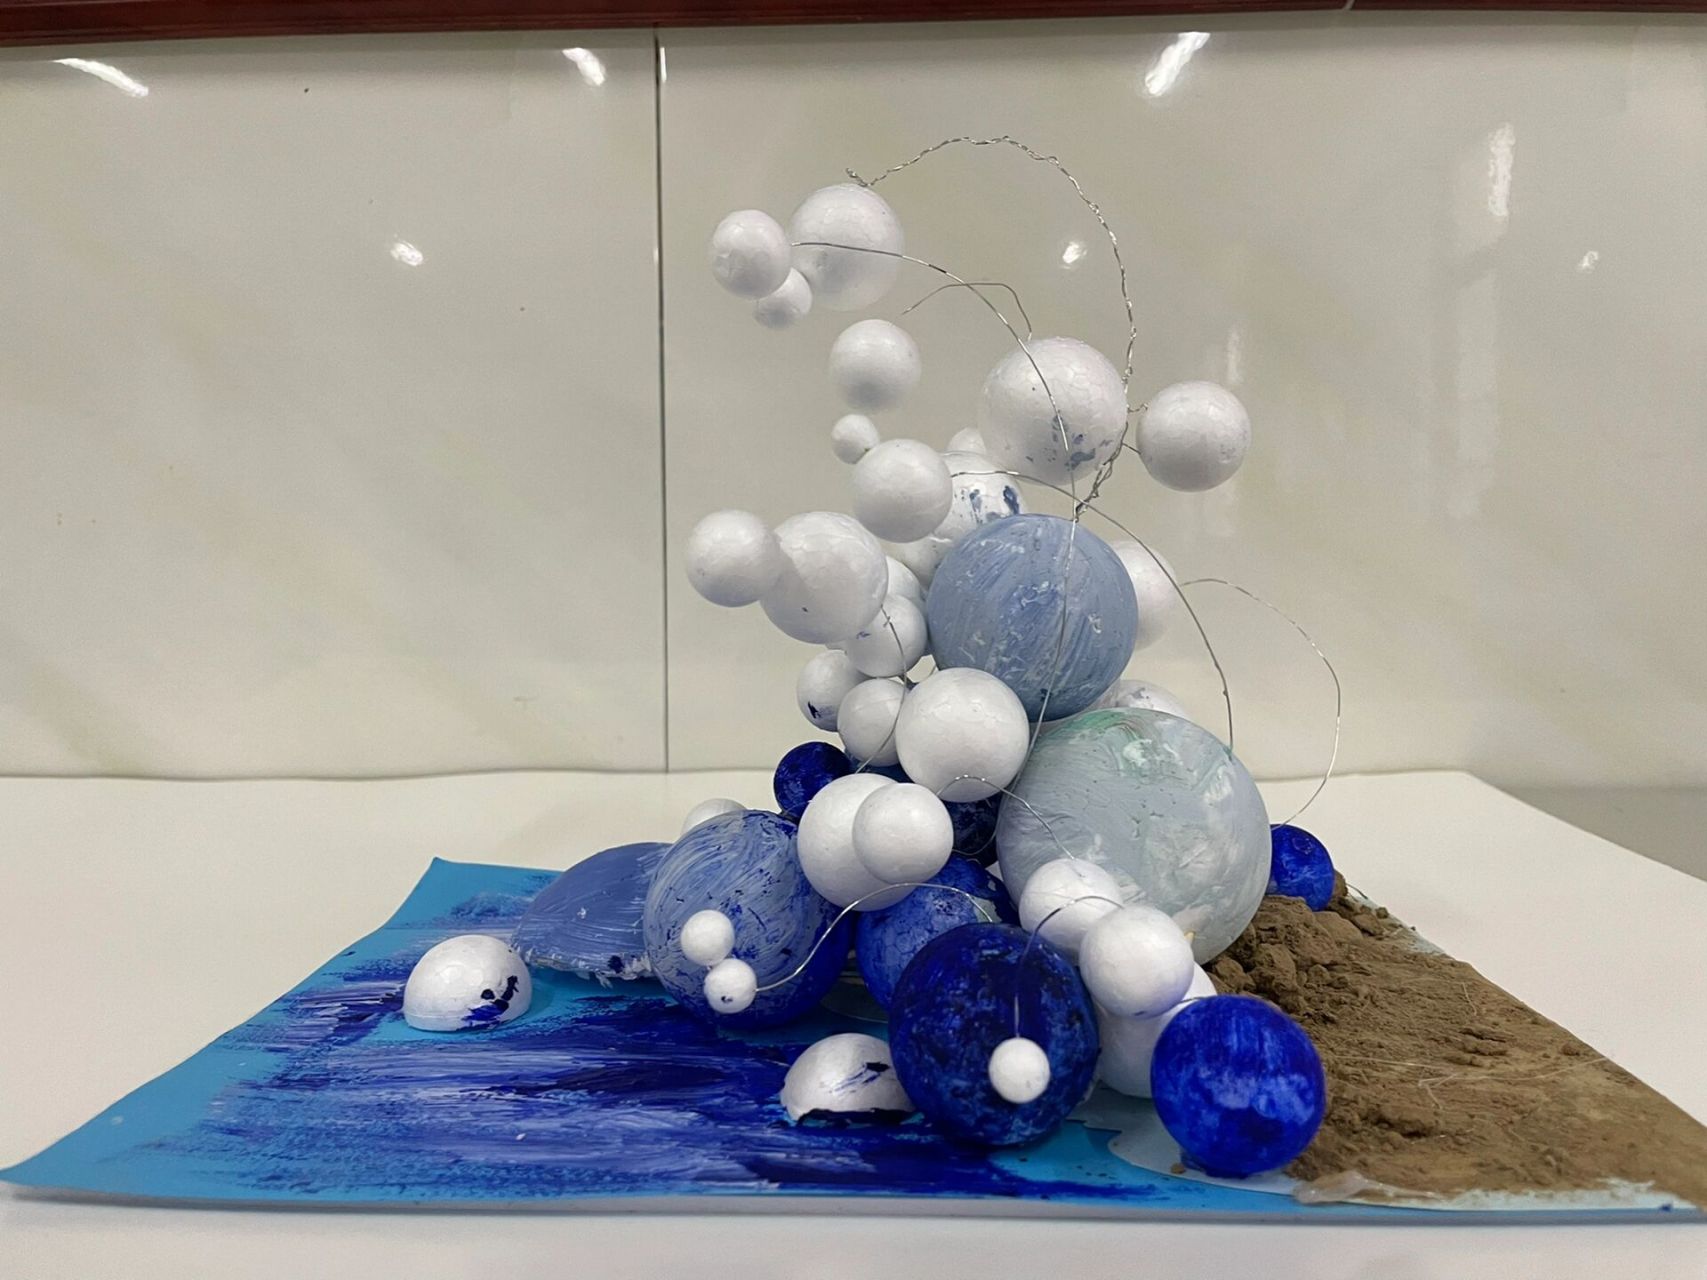 分享点的立体构成作业 泡沫球抽象浪花,做的略粗糙 发现泡沫球用水粉